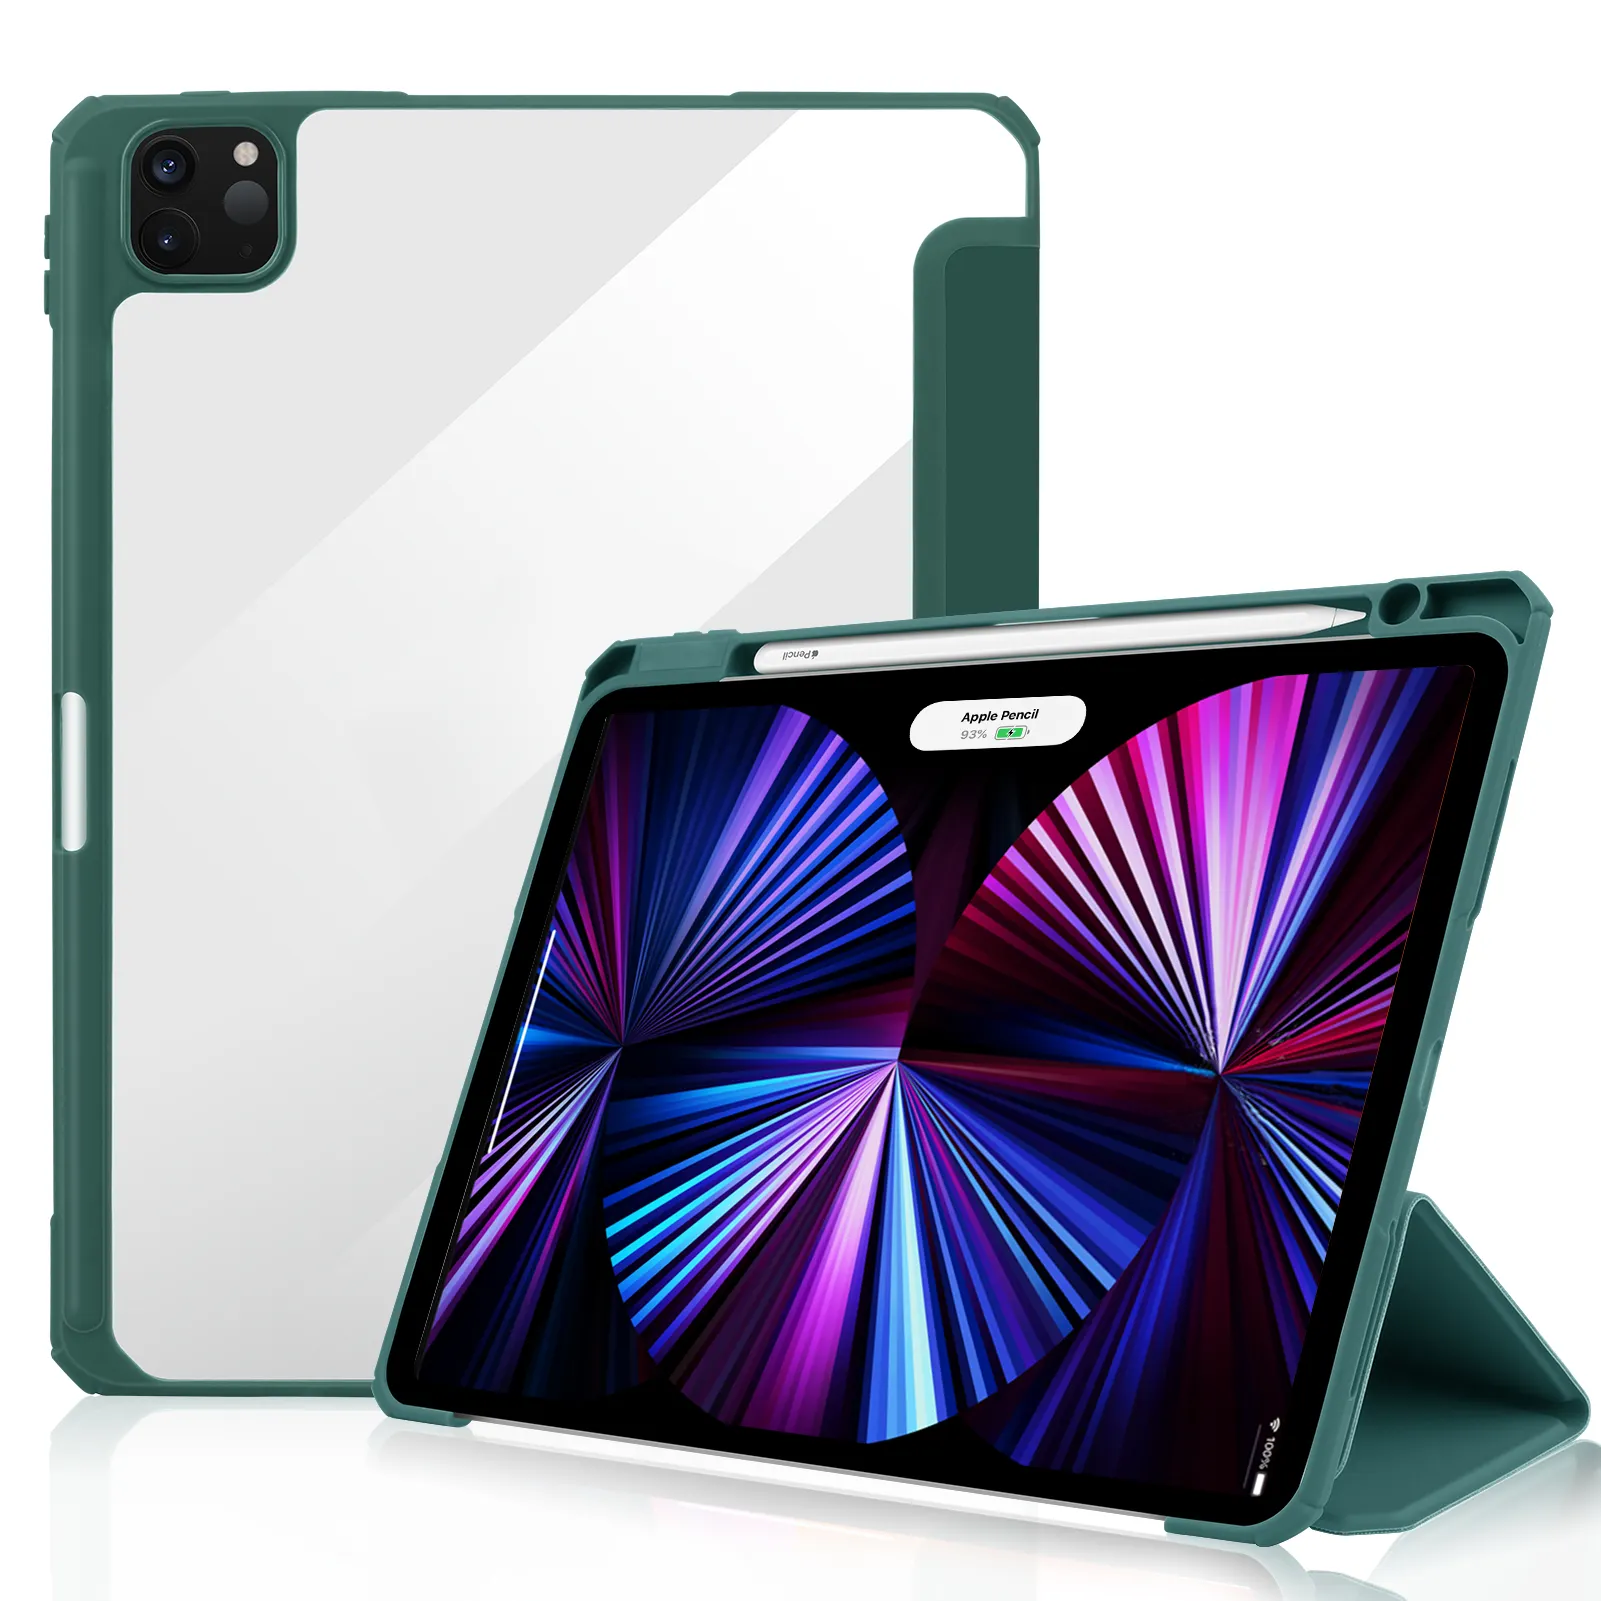 IPad Mới 2020 Có Khe Cắm Bút Vỏ Mềm Vỏ Chống Sốc Trong Suốt Cho iPad Pro 11 Inch